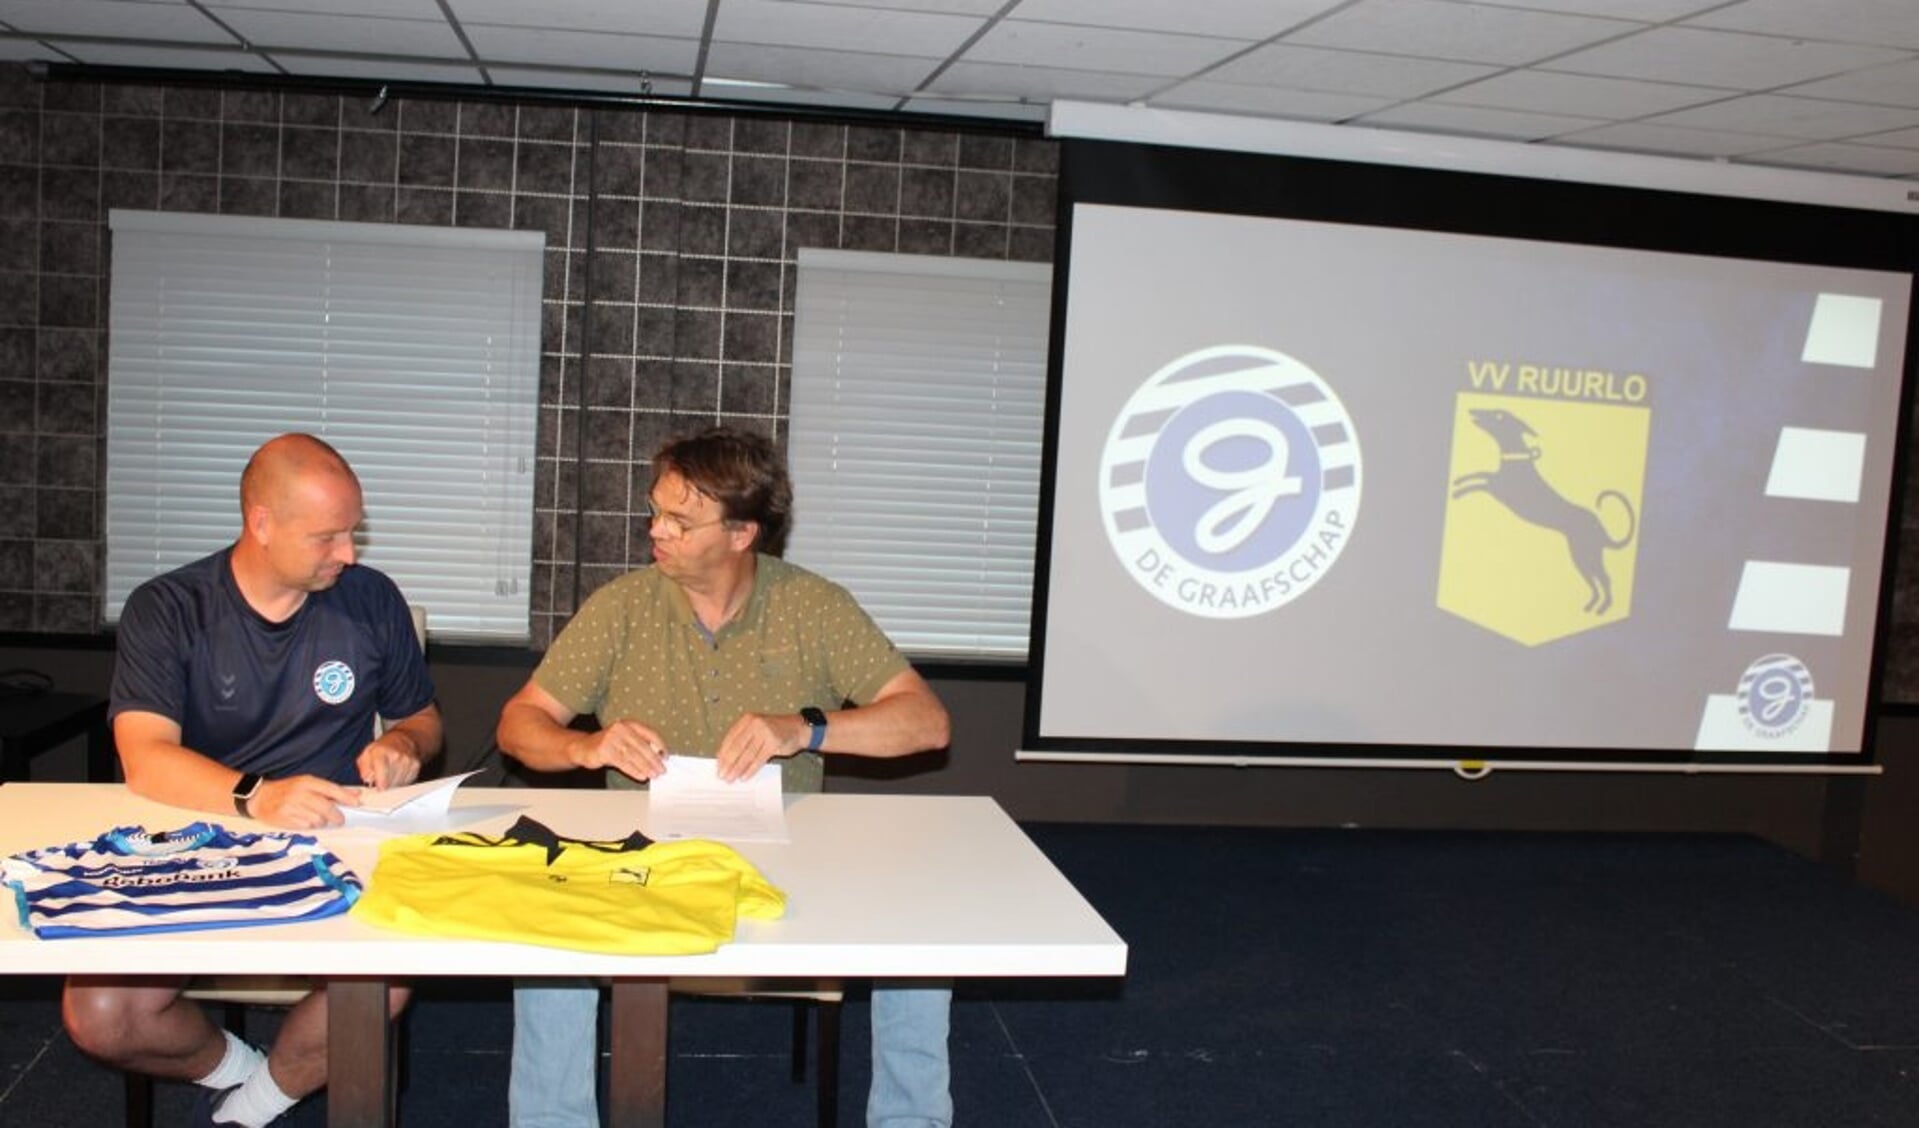 Voorzitter Henry Meutstege van VV Ruurlo (l) en Hoofd jeugdopleiding Jefta Bresser van De Graafschap ondertekenen de overeenkomst. Foto: PR.